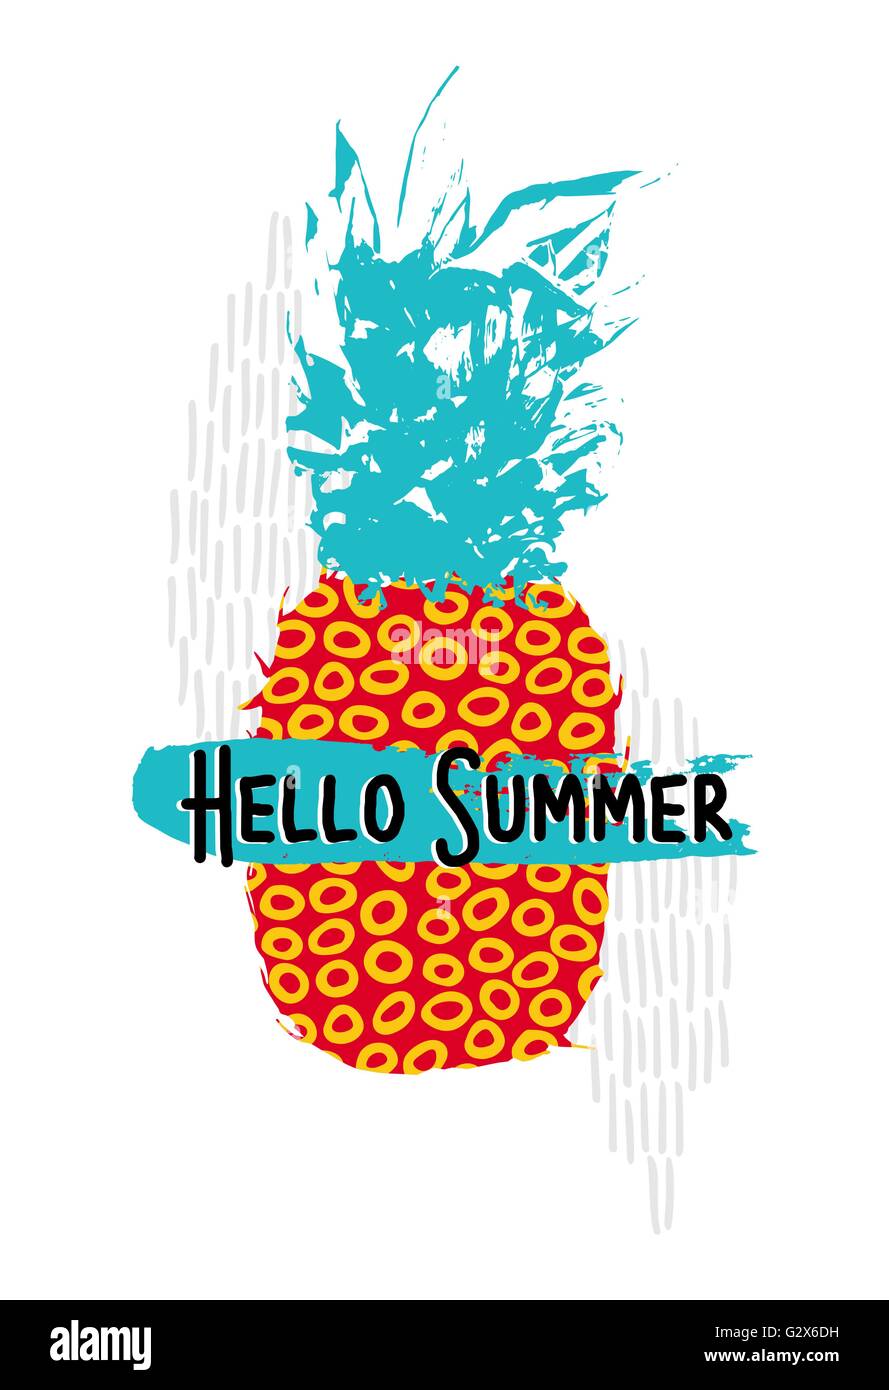 Hallo Sommer retro 80er Jahre Konzept Außenillustration Ananas Frucht mit Vintage bunten Kunst Elemente und Memphis Stil Formen. Stock Vektor